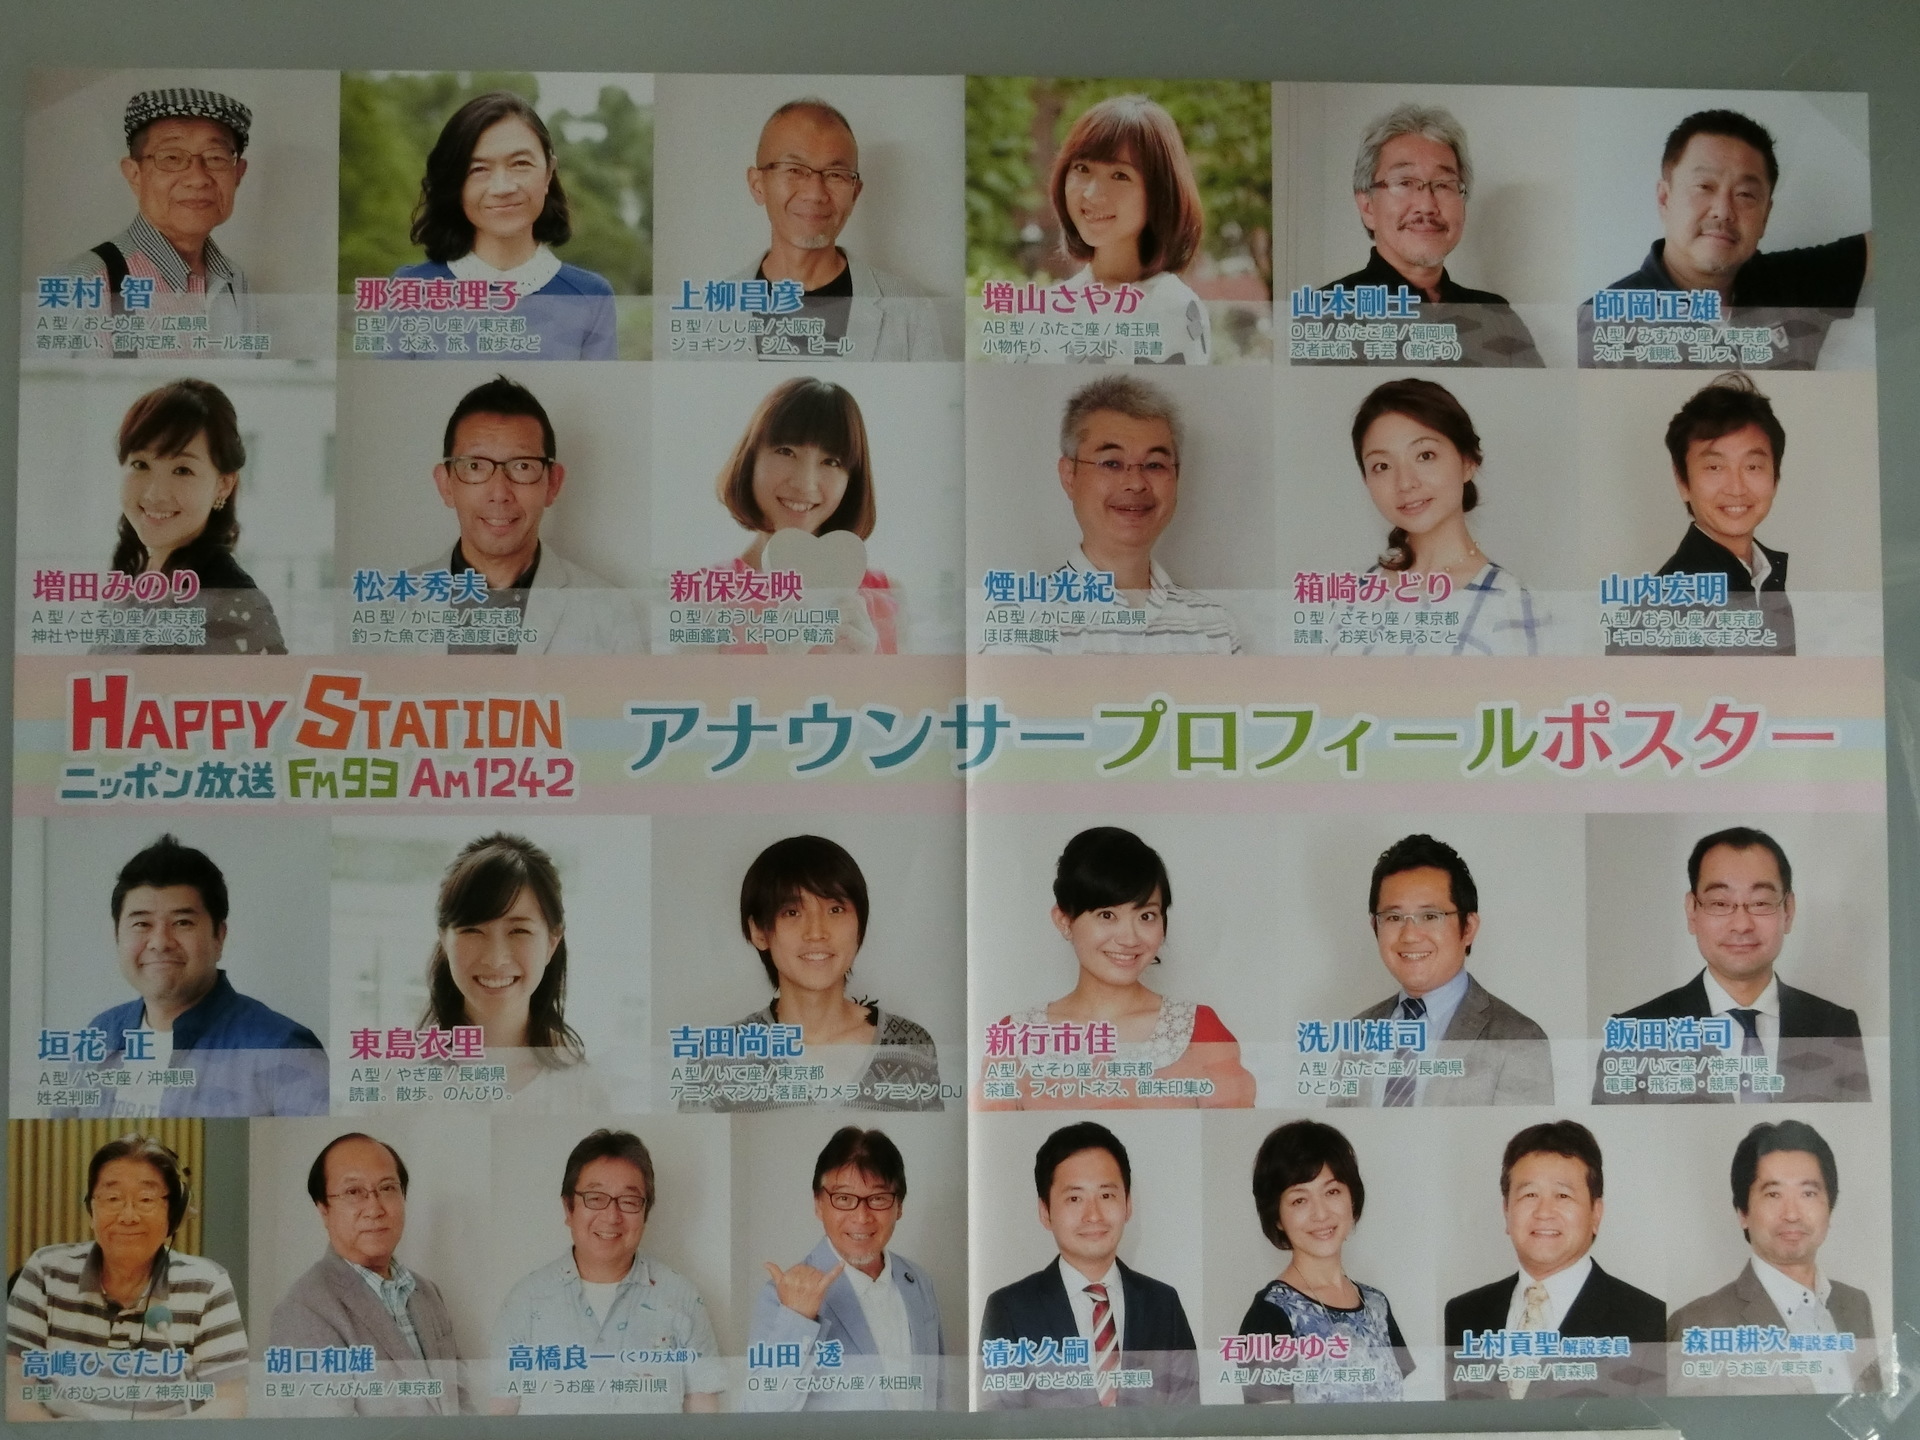 写真付き ニッポン放送女性アナウンサーカレンダー 16 届きました 付録の アナウンサープロフィールポスター は早速 部屋の壁に貼って 楽しんでますよ